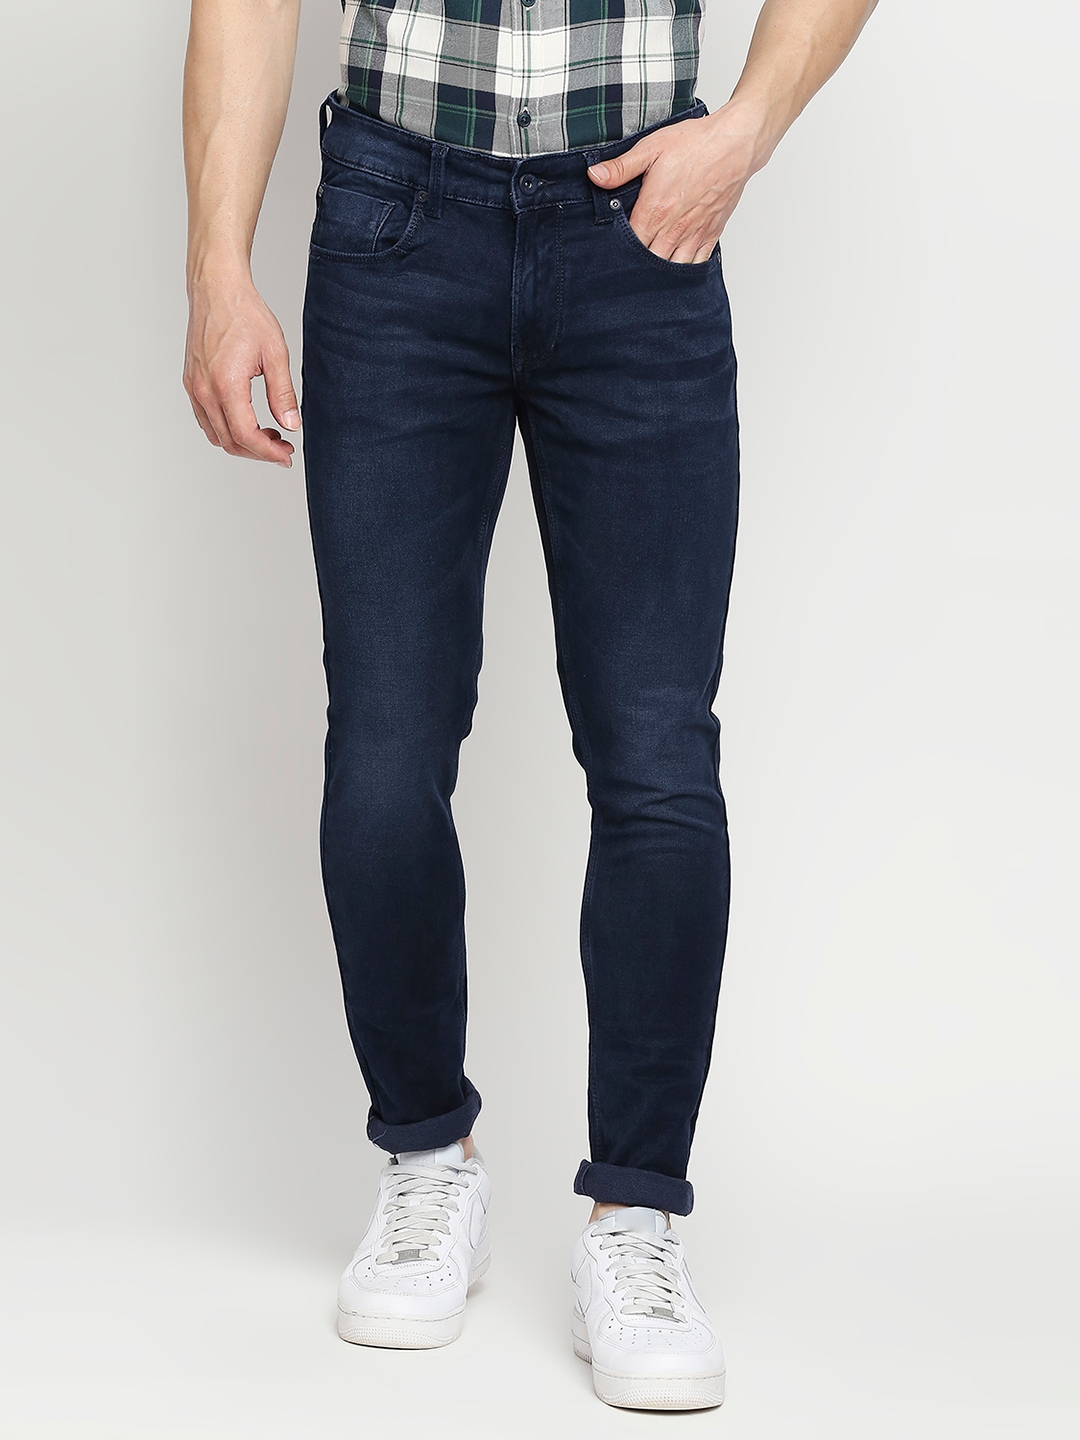 Men's Blue Cotton Solid Jeans